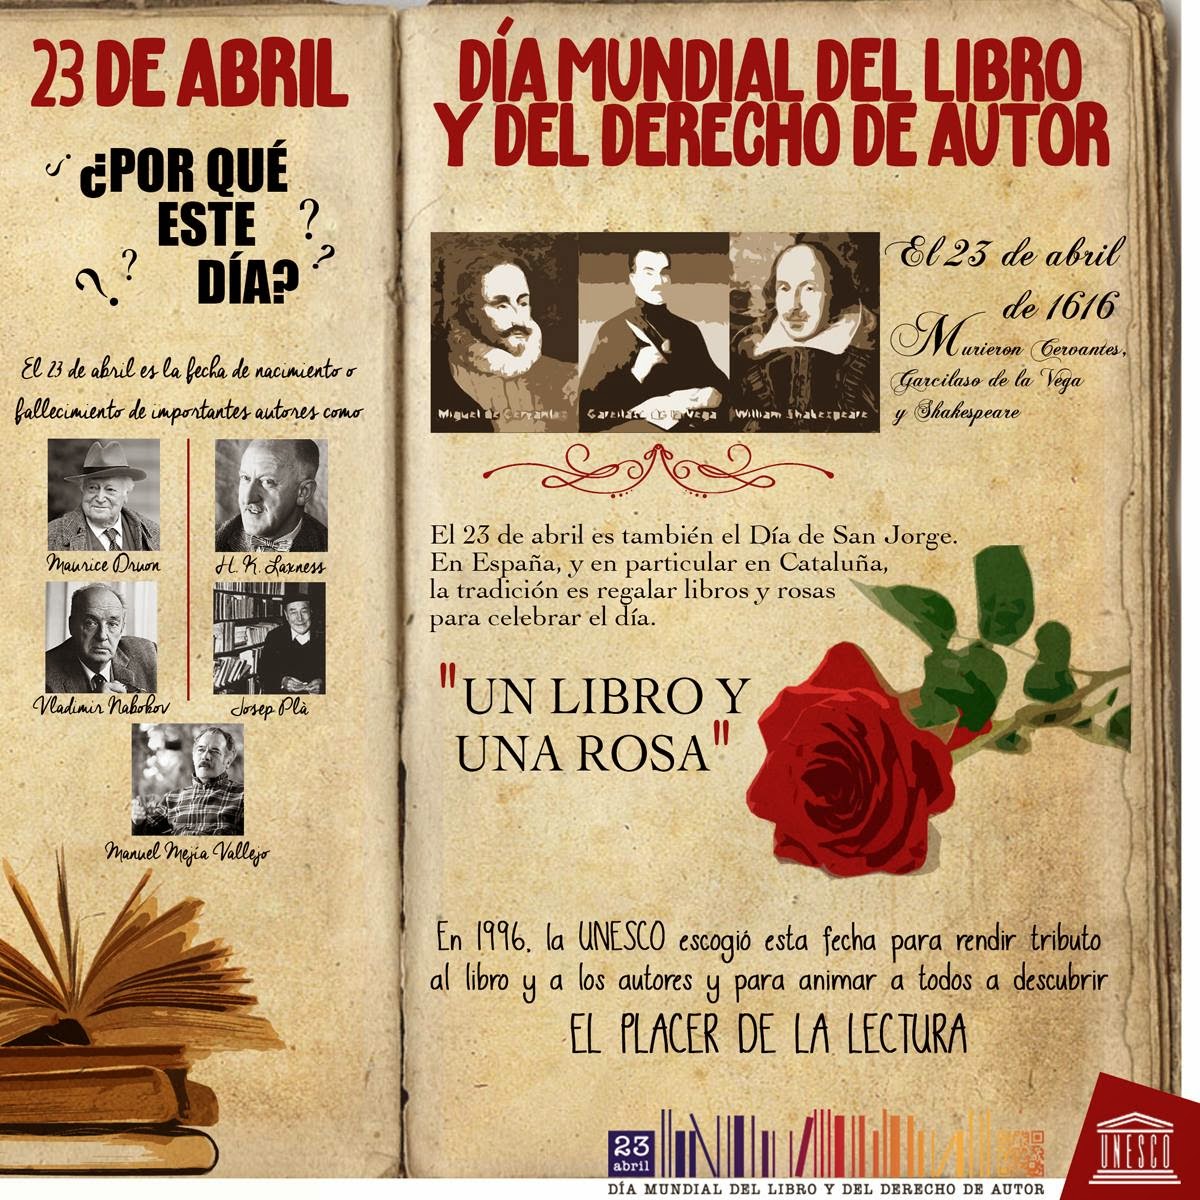 http://www.diadellibro.eu/images/stories/noticias/Dia-mundial-del-libro-y-del-derecho-de-autor-Libro-y-Rosa-UNESCO-ES.jpg